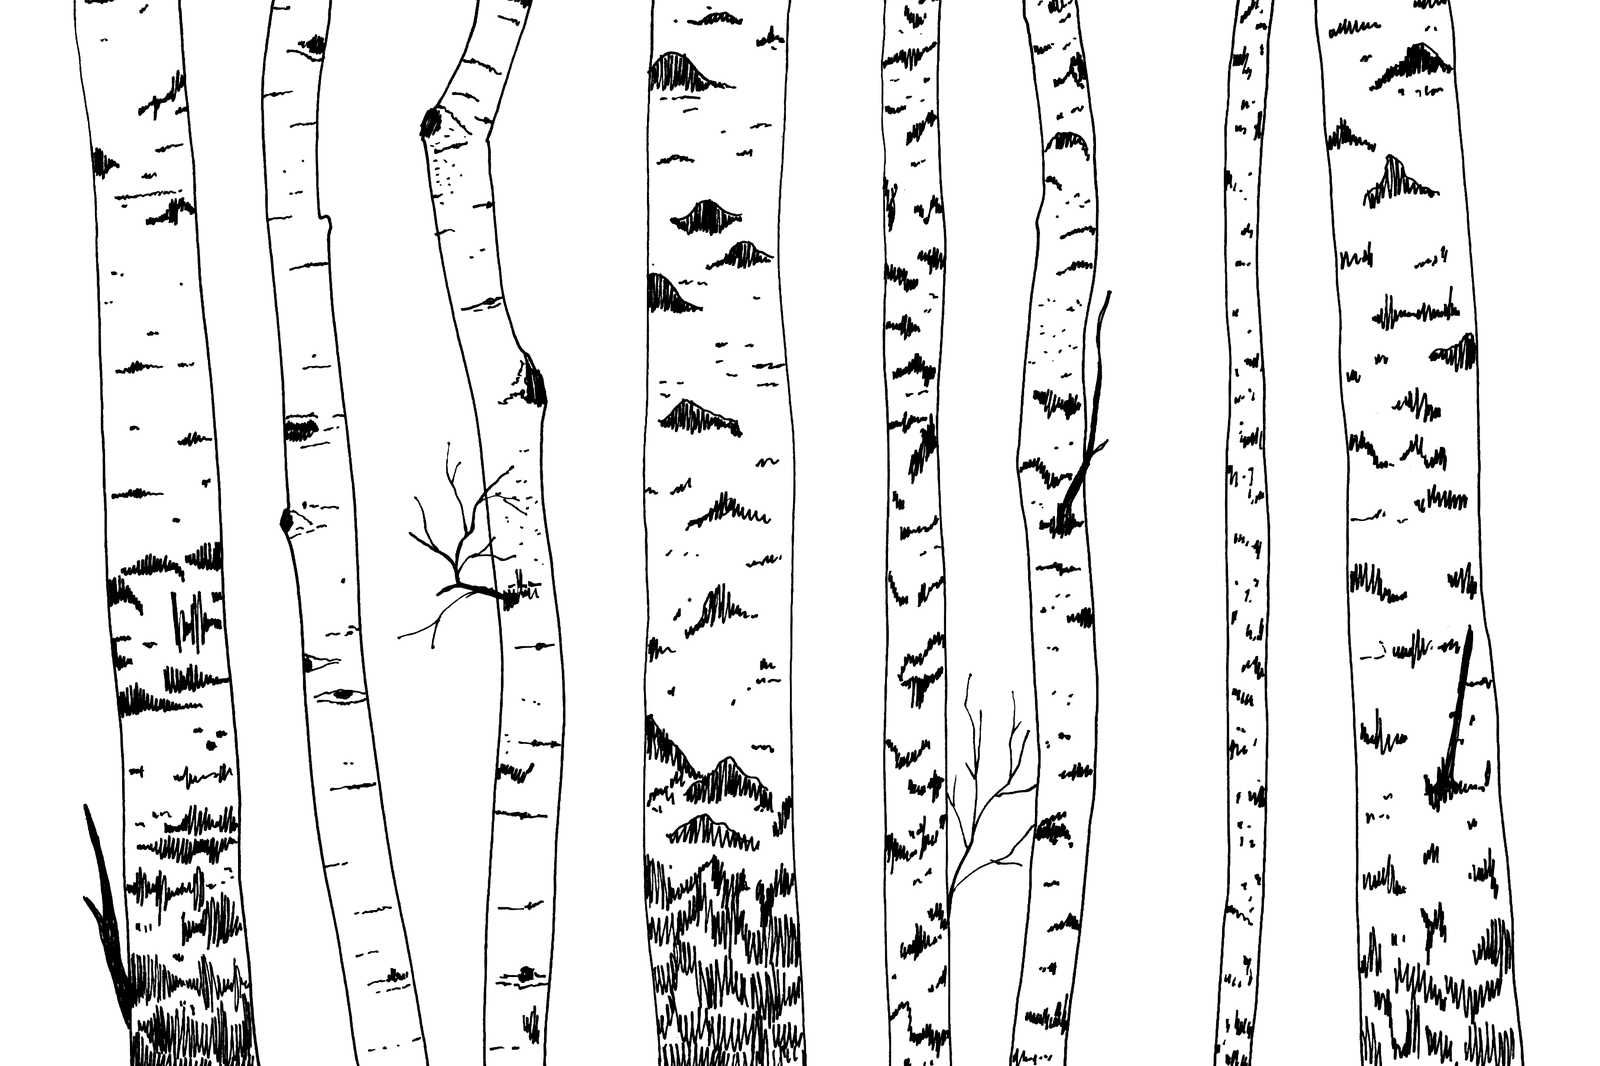             Lienzo dibujado bosque de abedules - 90 cm x 60 cm
        